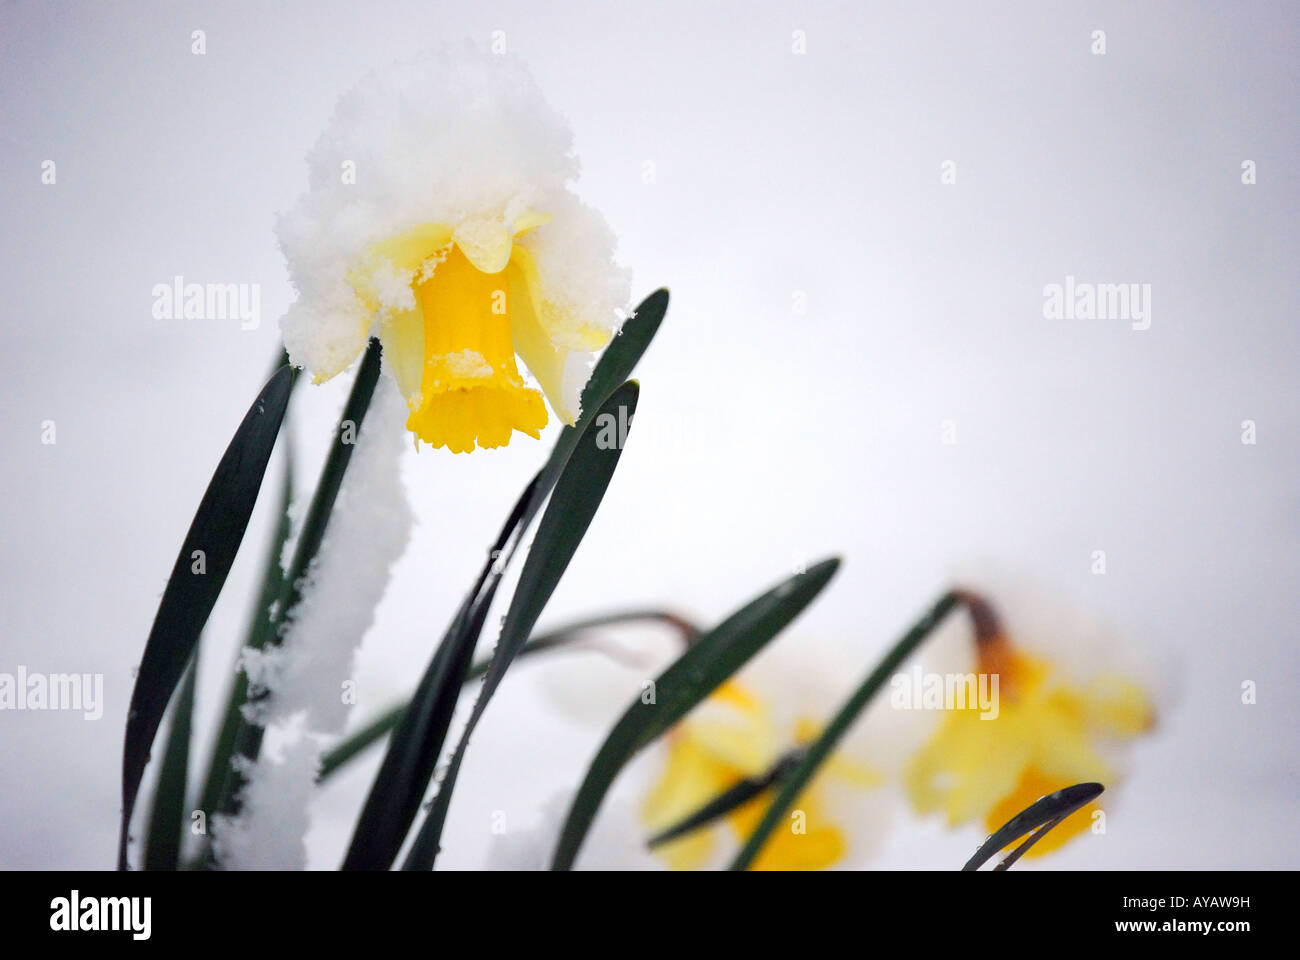 Narzissen bedeckt im Schnee, Lyne, Virginia Water, Surrey, England, Vereinigtes Königreich Stockfoto